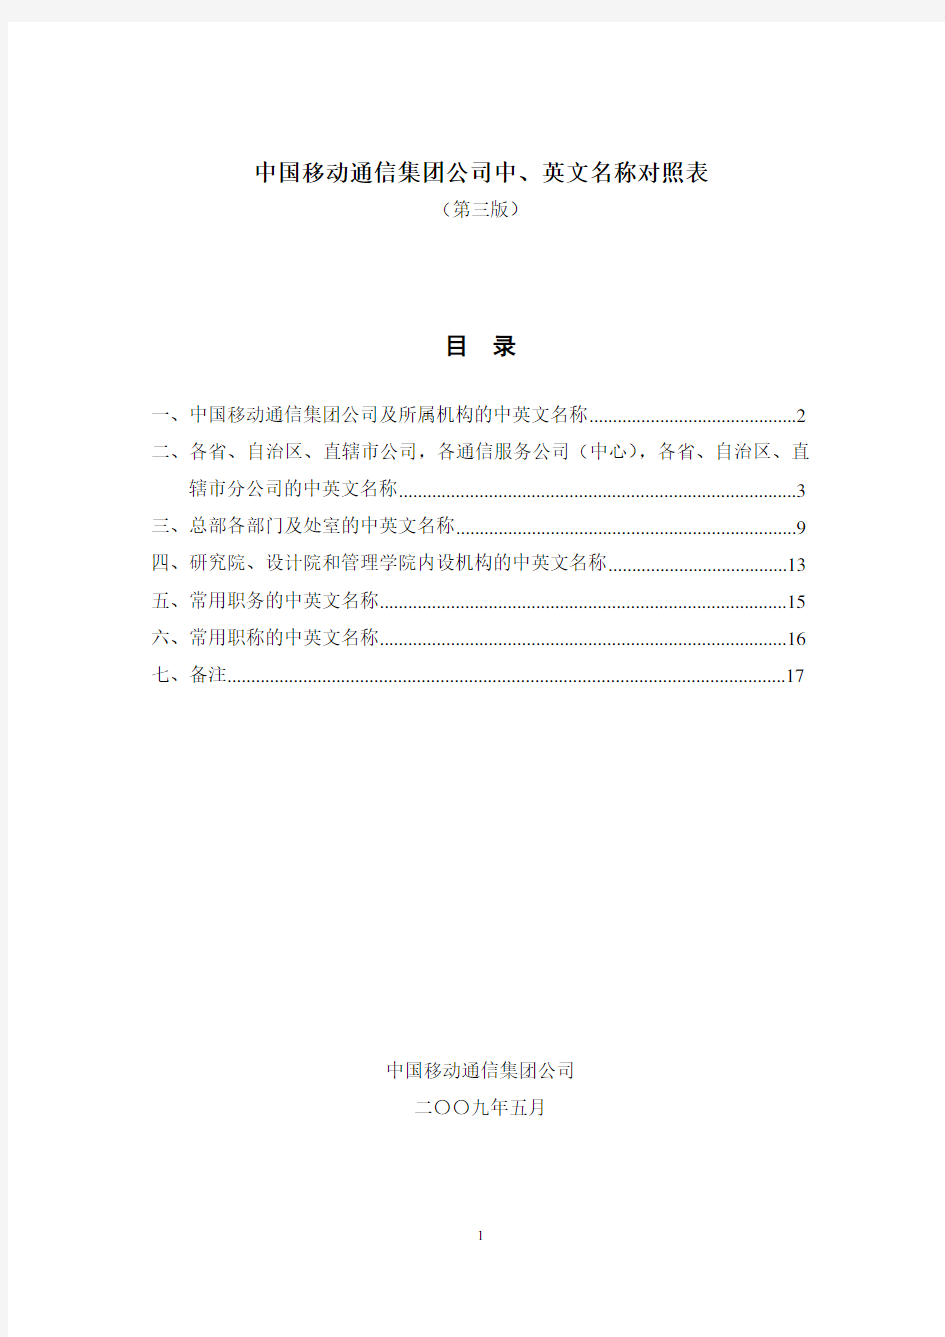 中国移动通信集新团公司中、英文名称对照表(第三版)